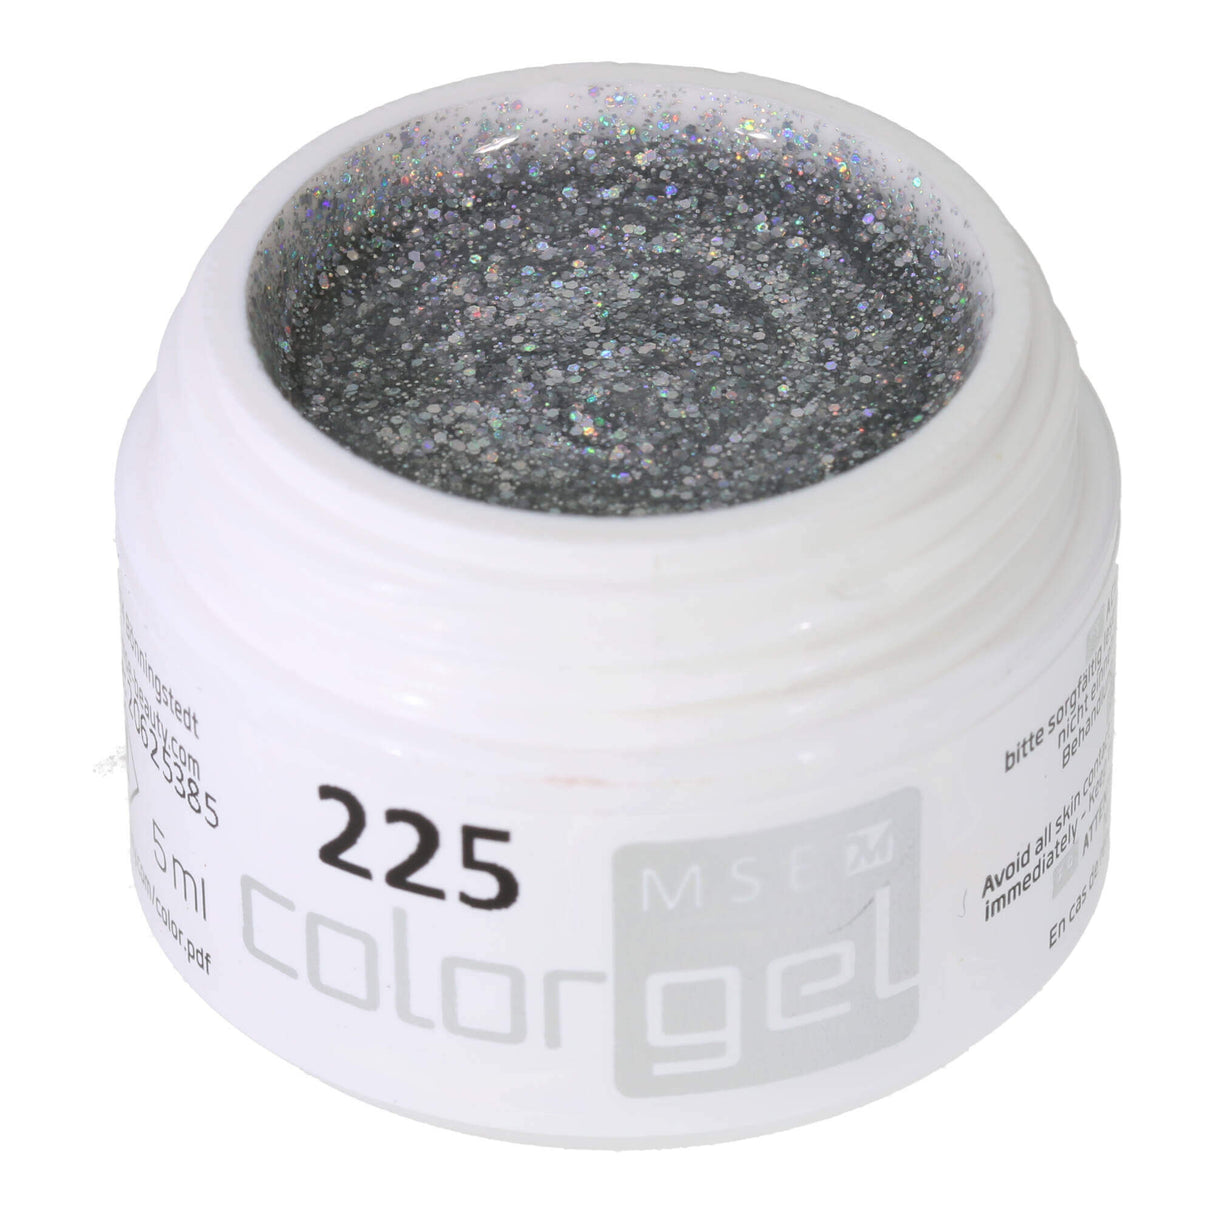 # 225 Premium-GLITTER Color Gel 5ml ánh bạc lấp lánh với hiệu ứng cầu vồng rất đẹp